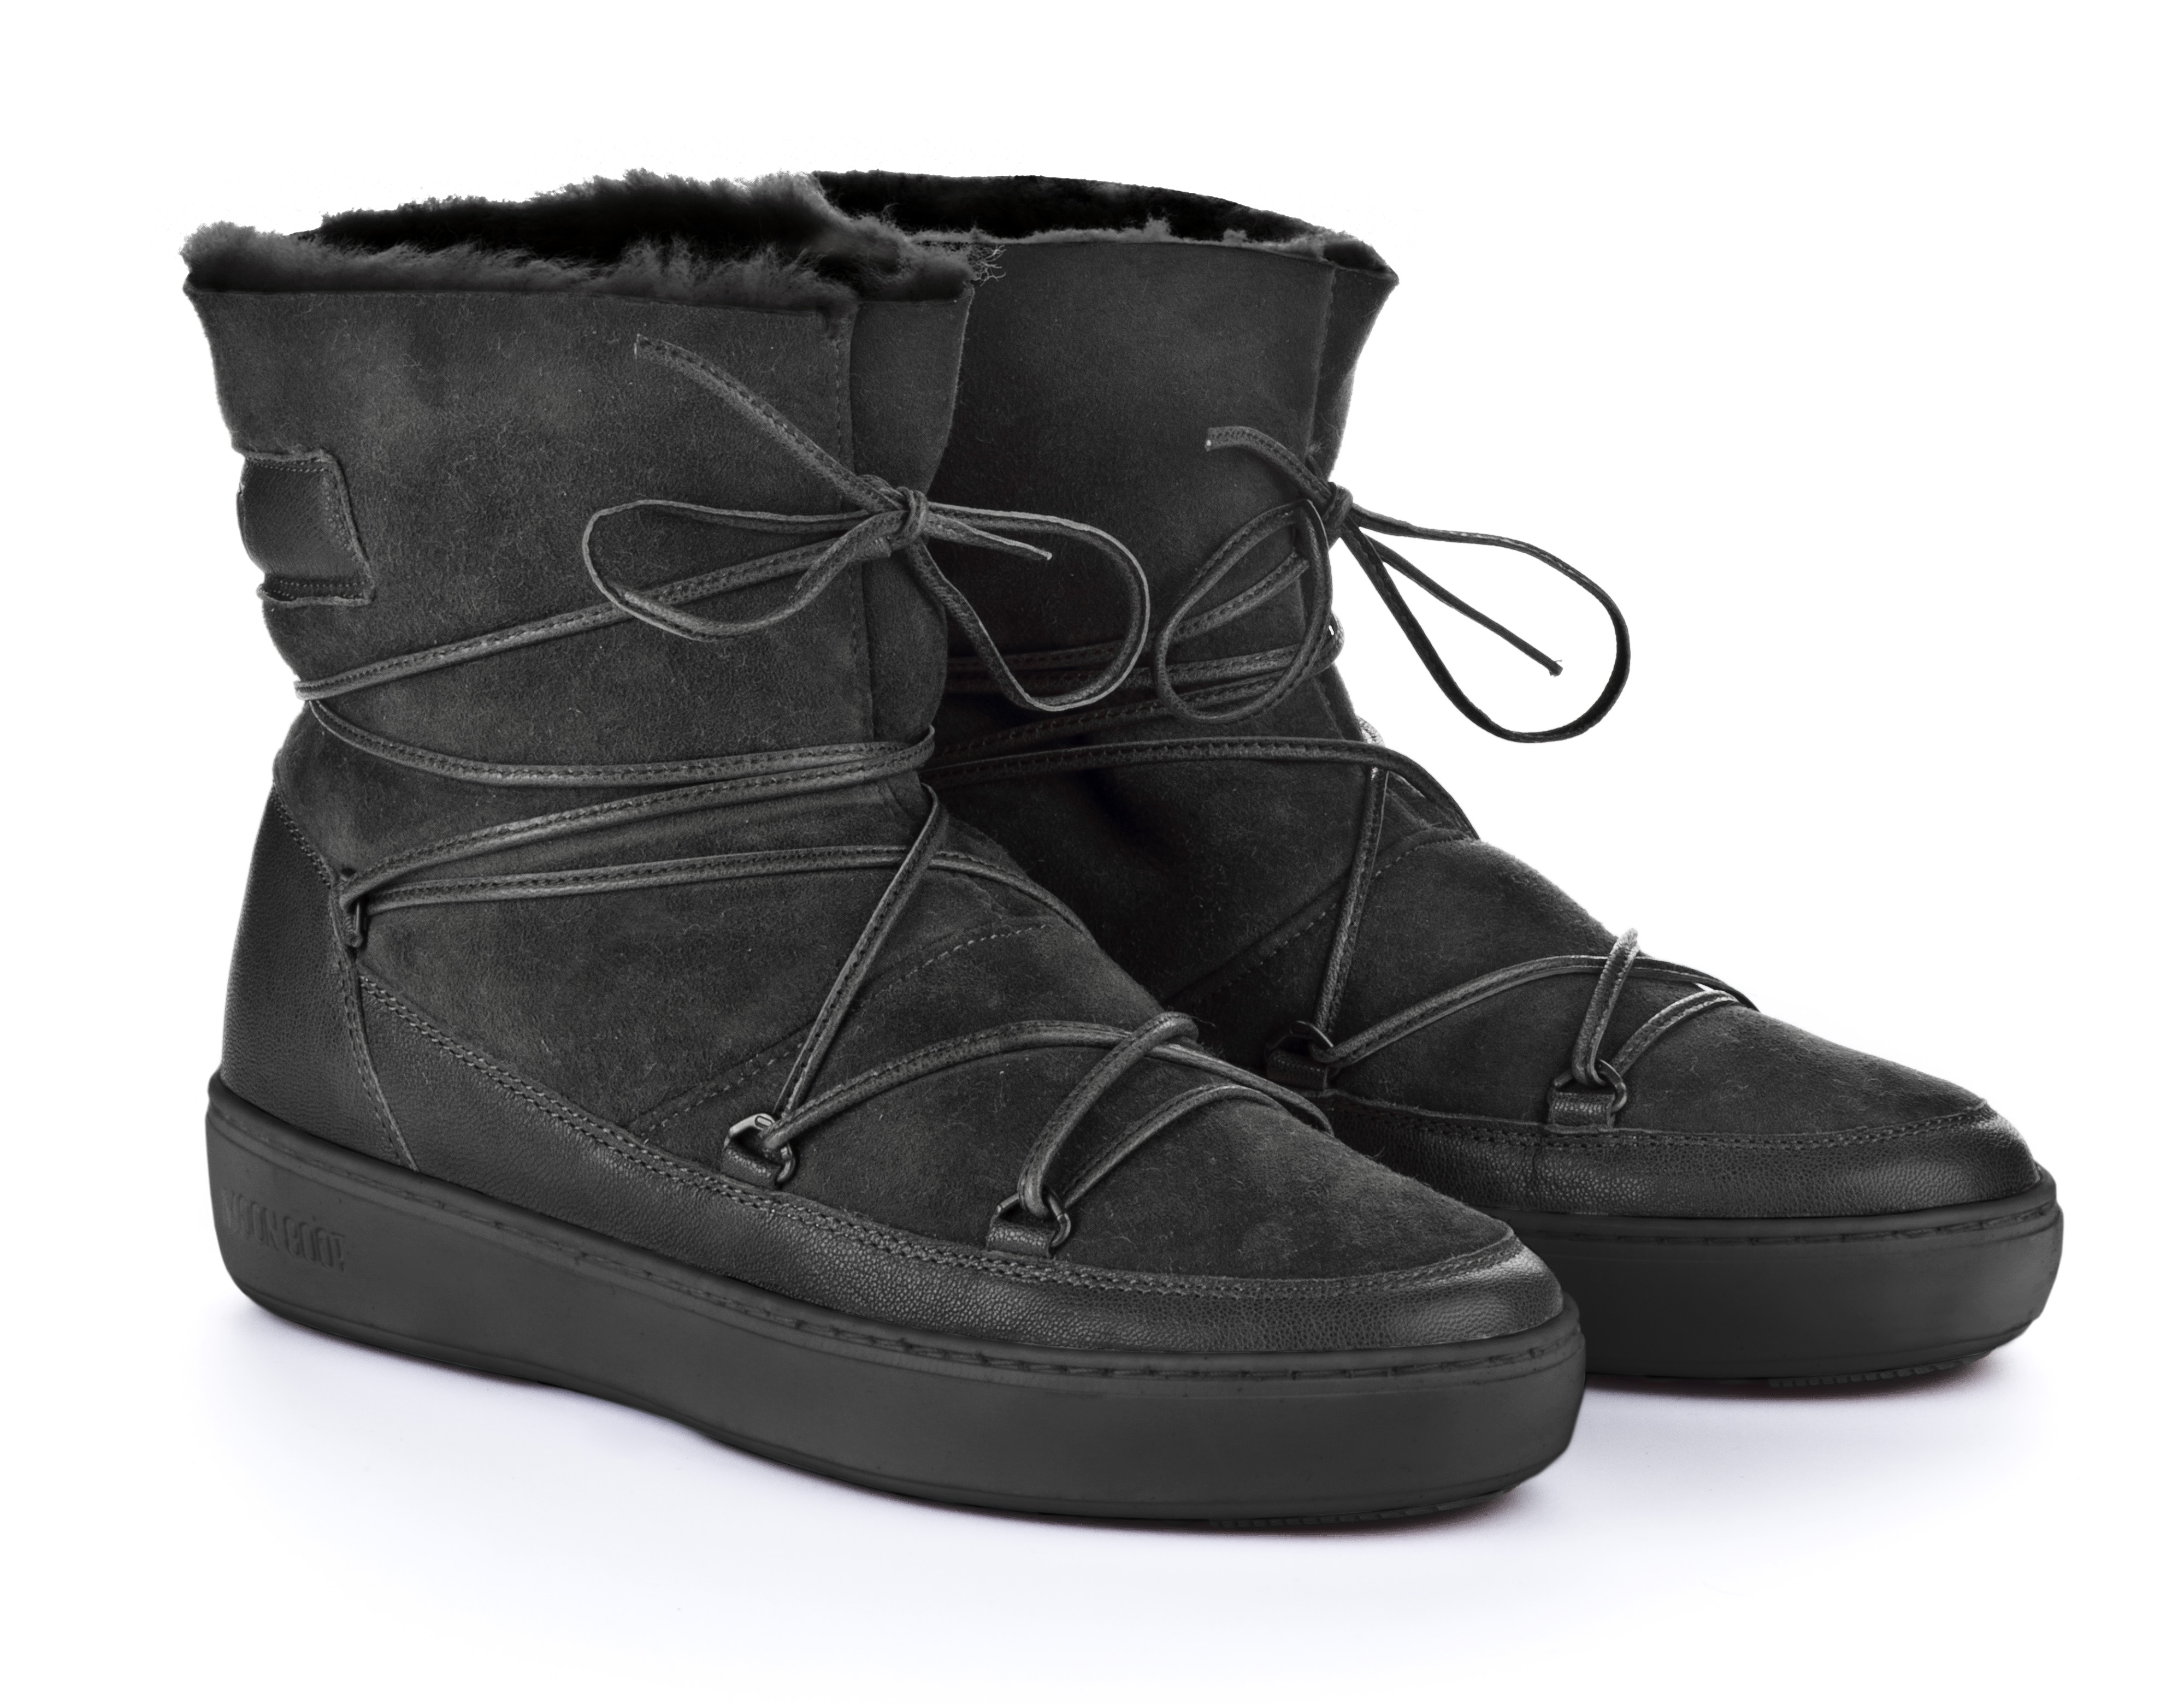 Original Moon Boots ® - Tecnica MOON BOOT PULSE LOW SHEARLING Damen